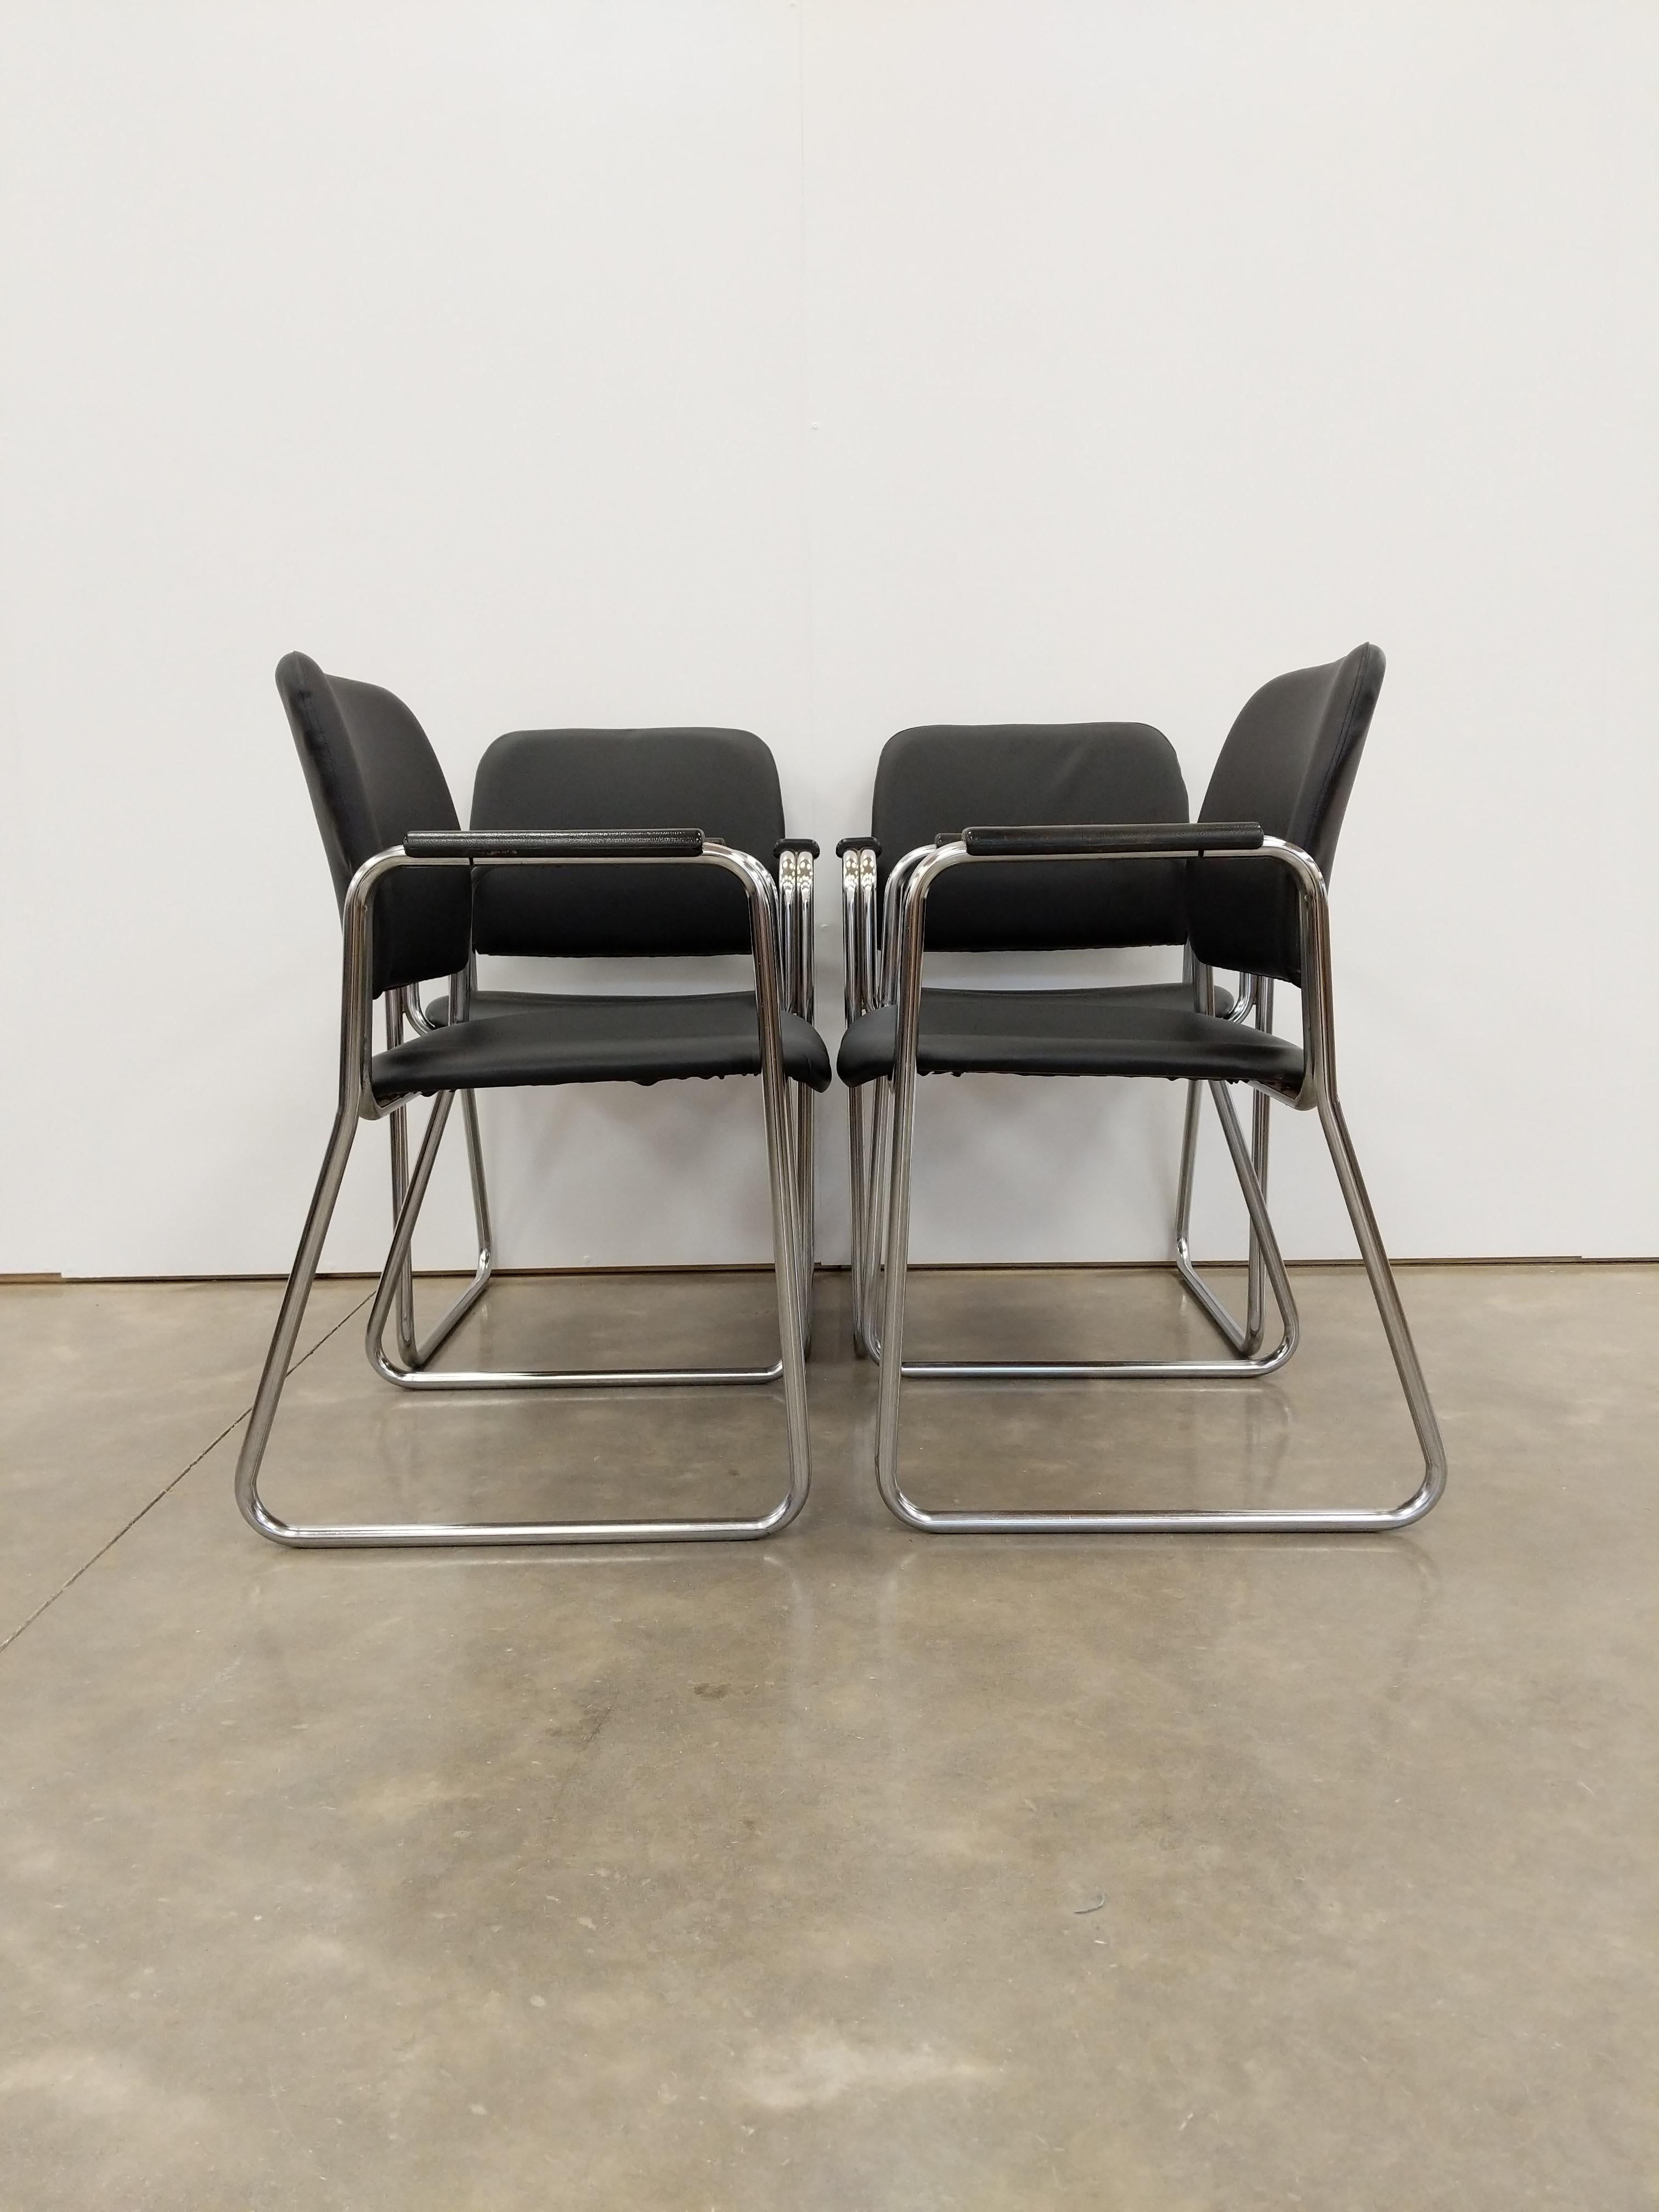 Ensemble de 4 chaises tchèques authentiques et modernes du milieu du siècle dernier.

Nous pouvons diviser ce set en paires si vous ne voulez que 2 chaises, contactez-nous.

Cet ensemble est en très bon état, avec une sellerie neuve et très peu de